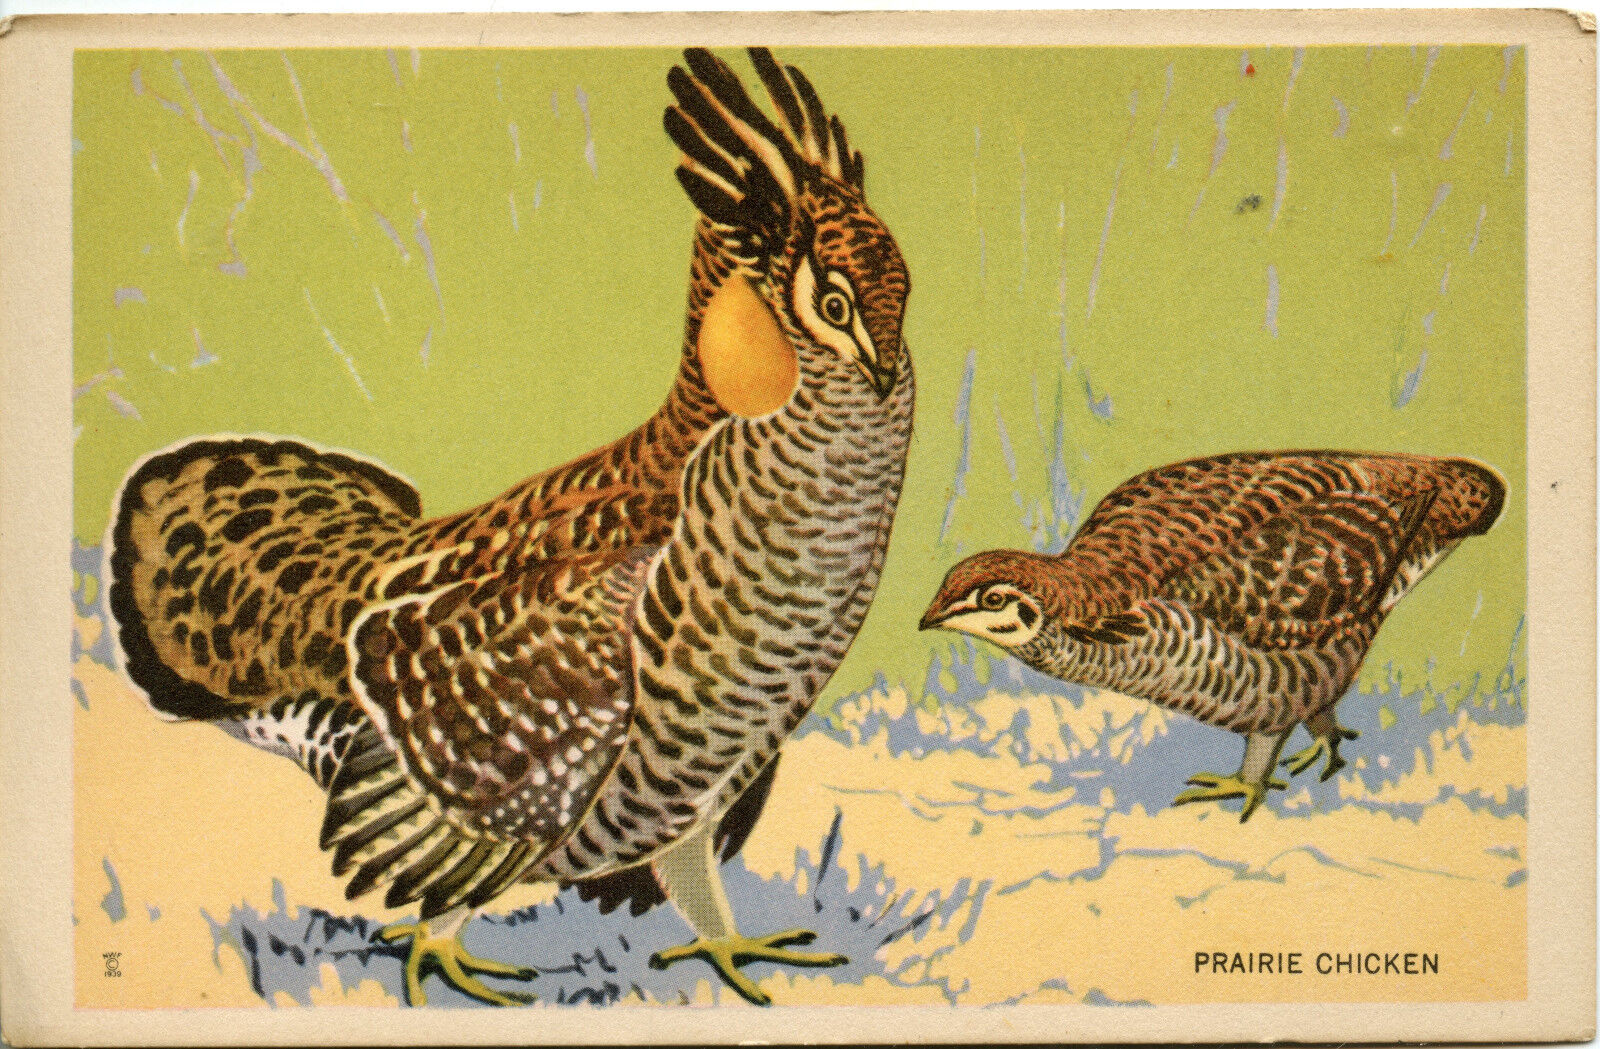 PRAIRIE CHICKEN 1939 Vintage Postcard NATIONAL WILDLIFE FEDERATION 